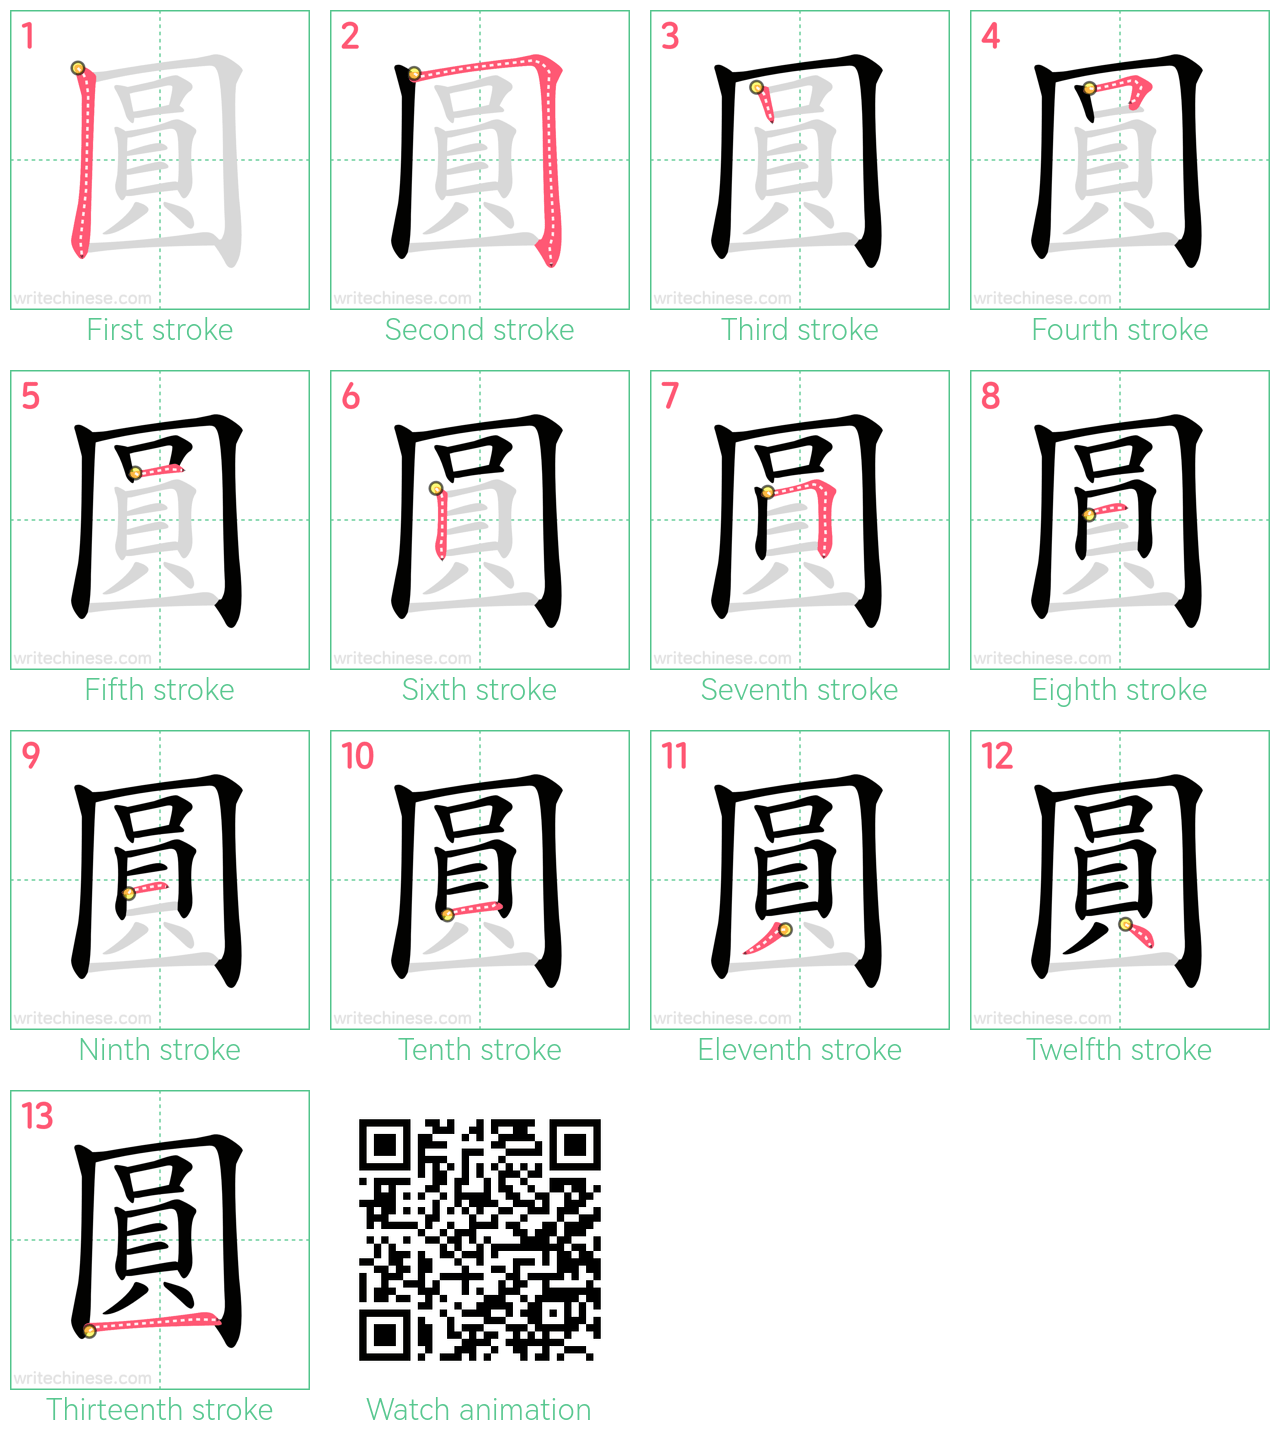 圓 step-by-step stroke order diagrams